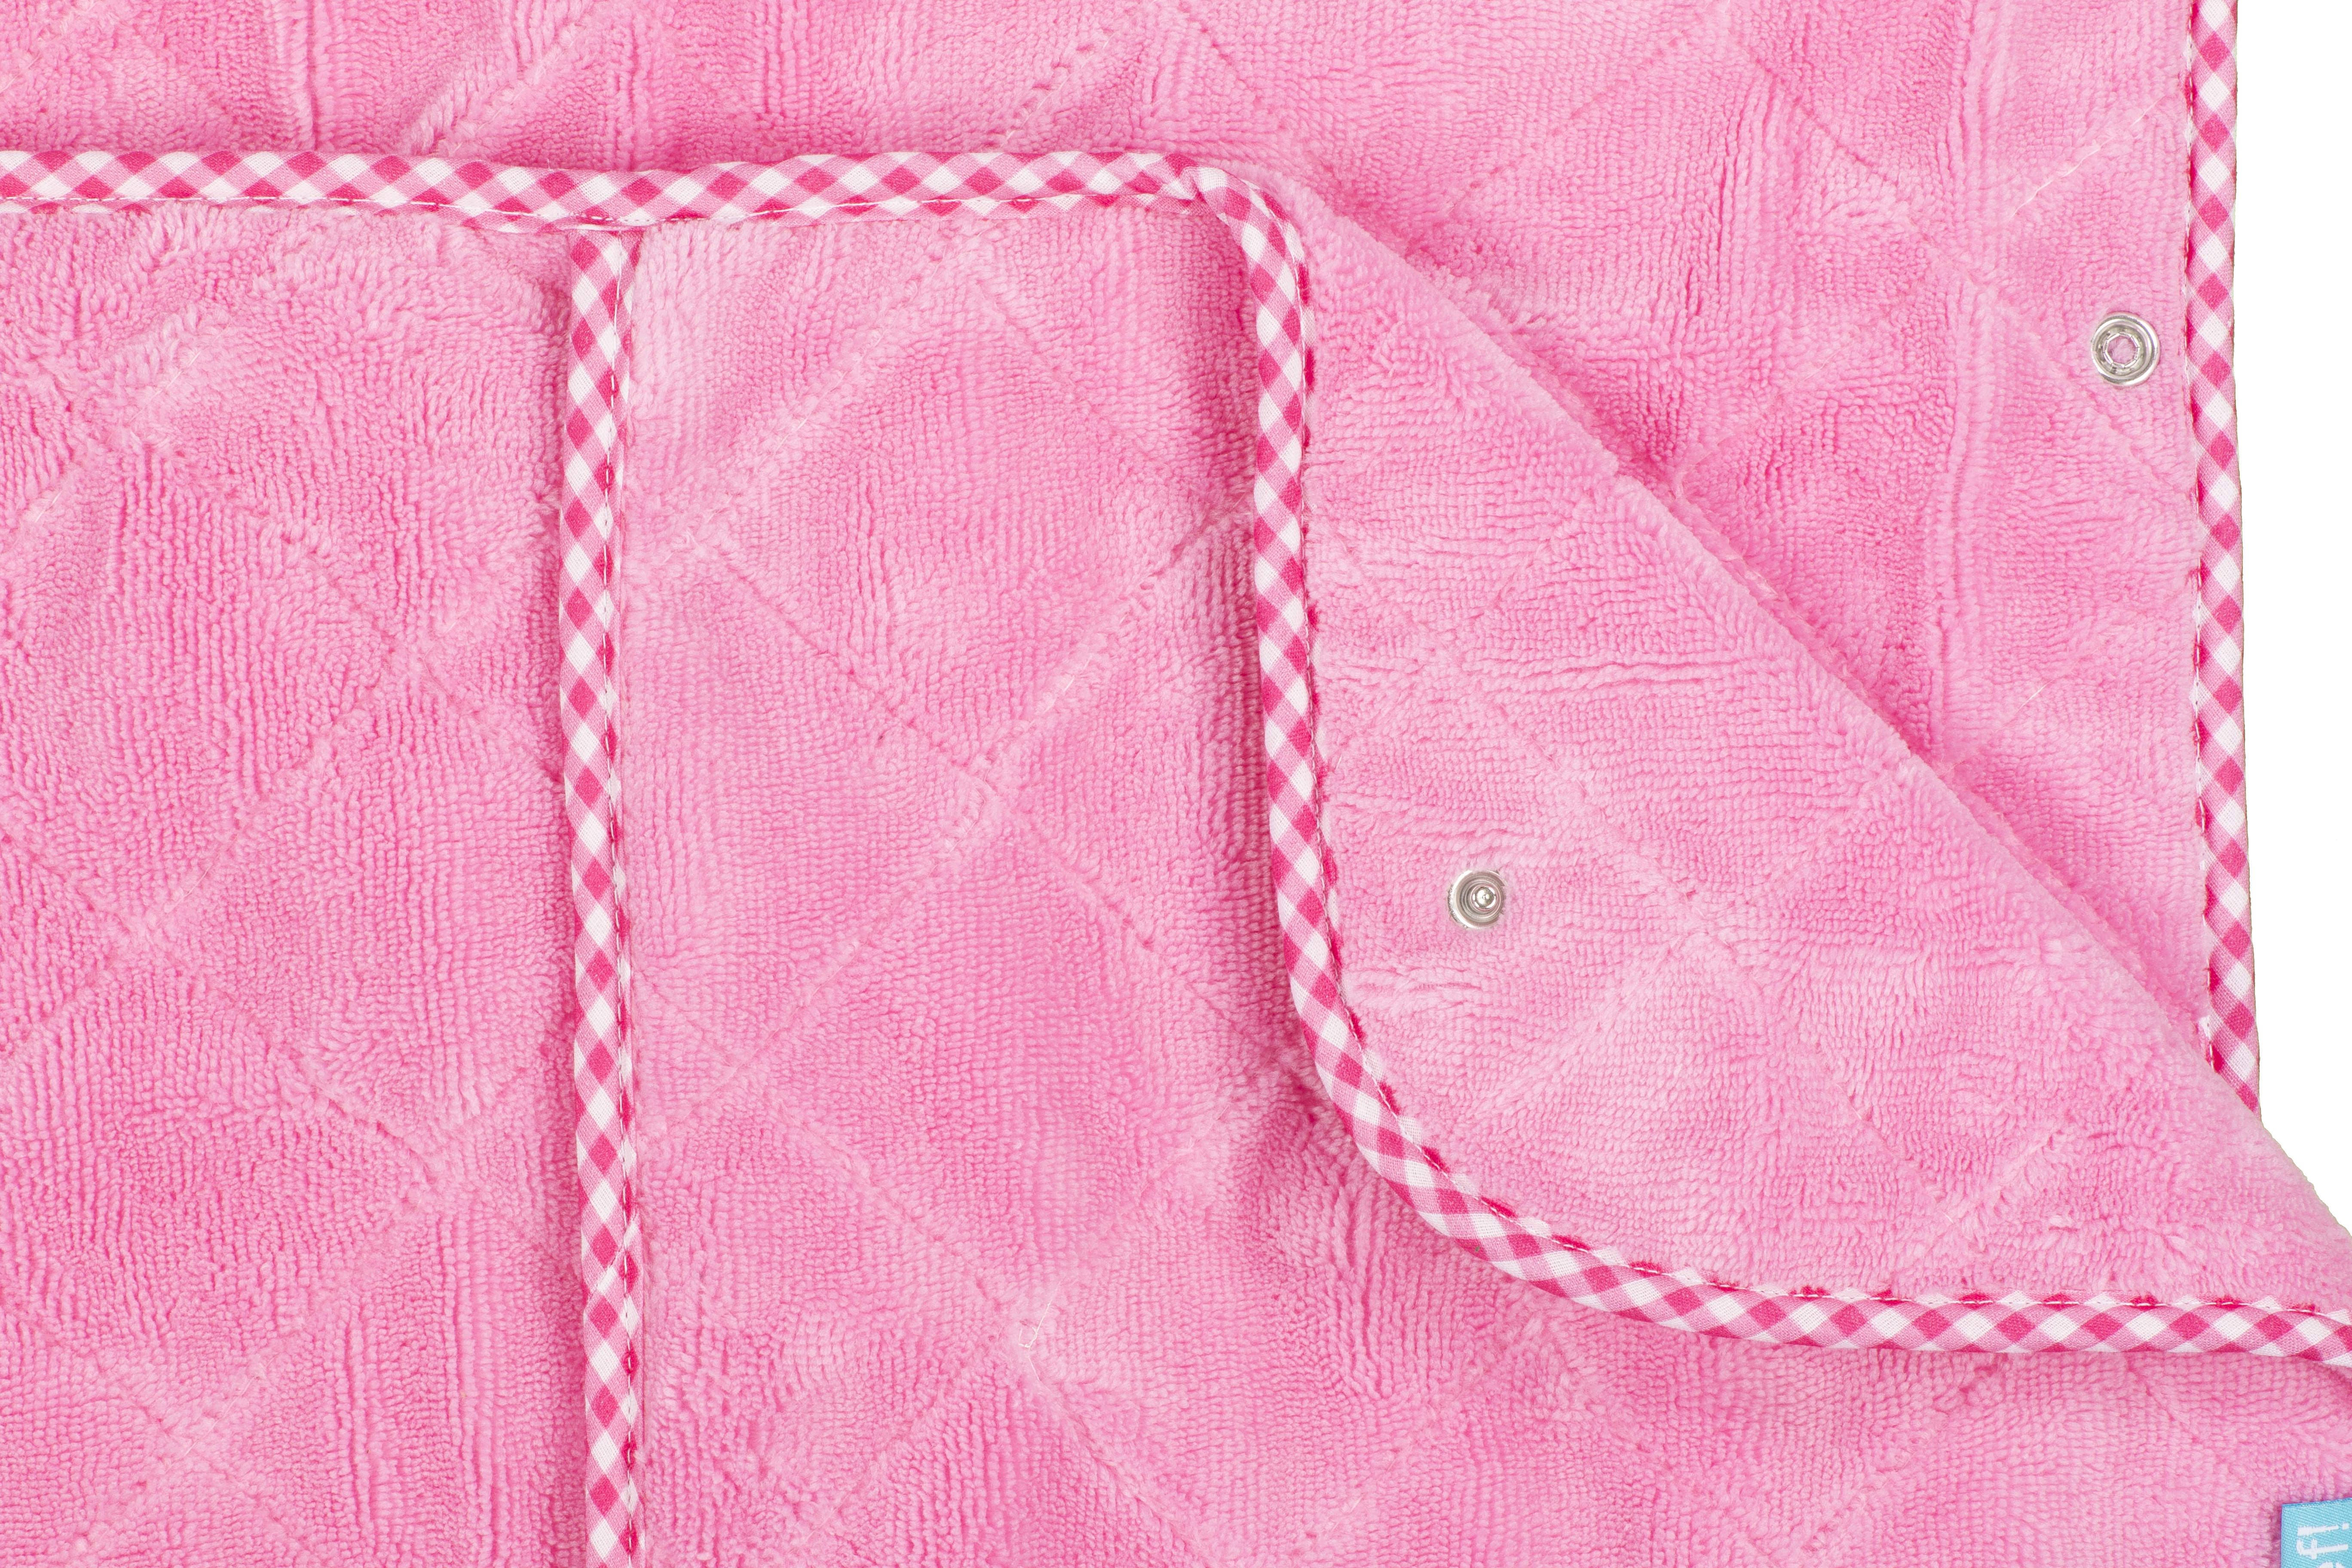 Sleeping bag Girl uni pink, 50x70-90-110 cm